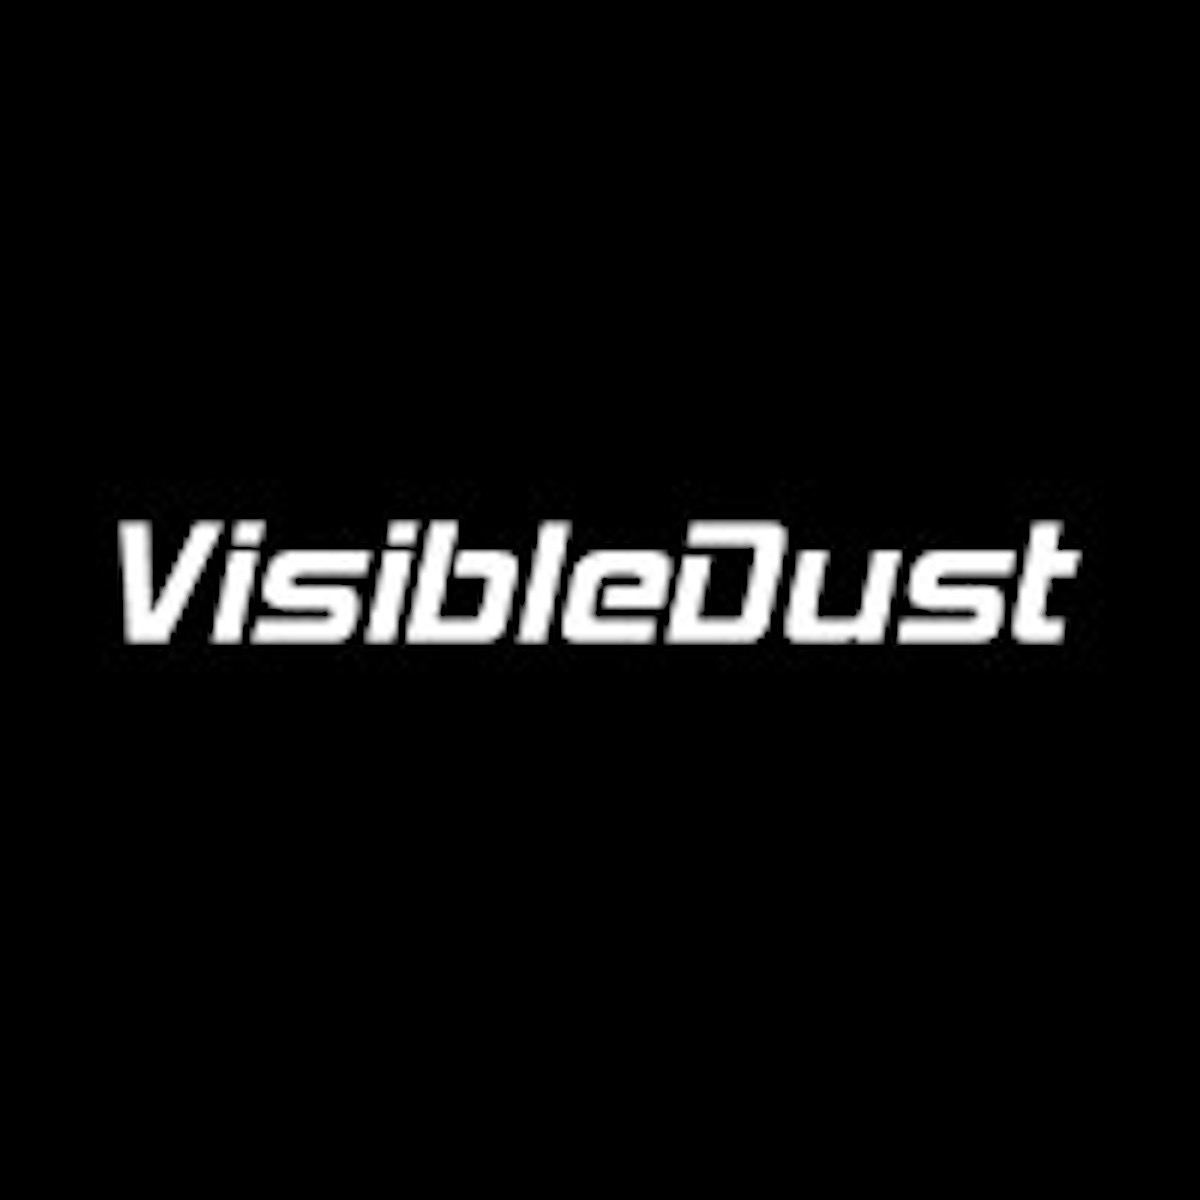 VisibleDust VDust Plus Reinigungslösung 15 ml